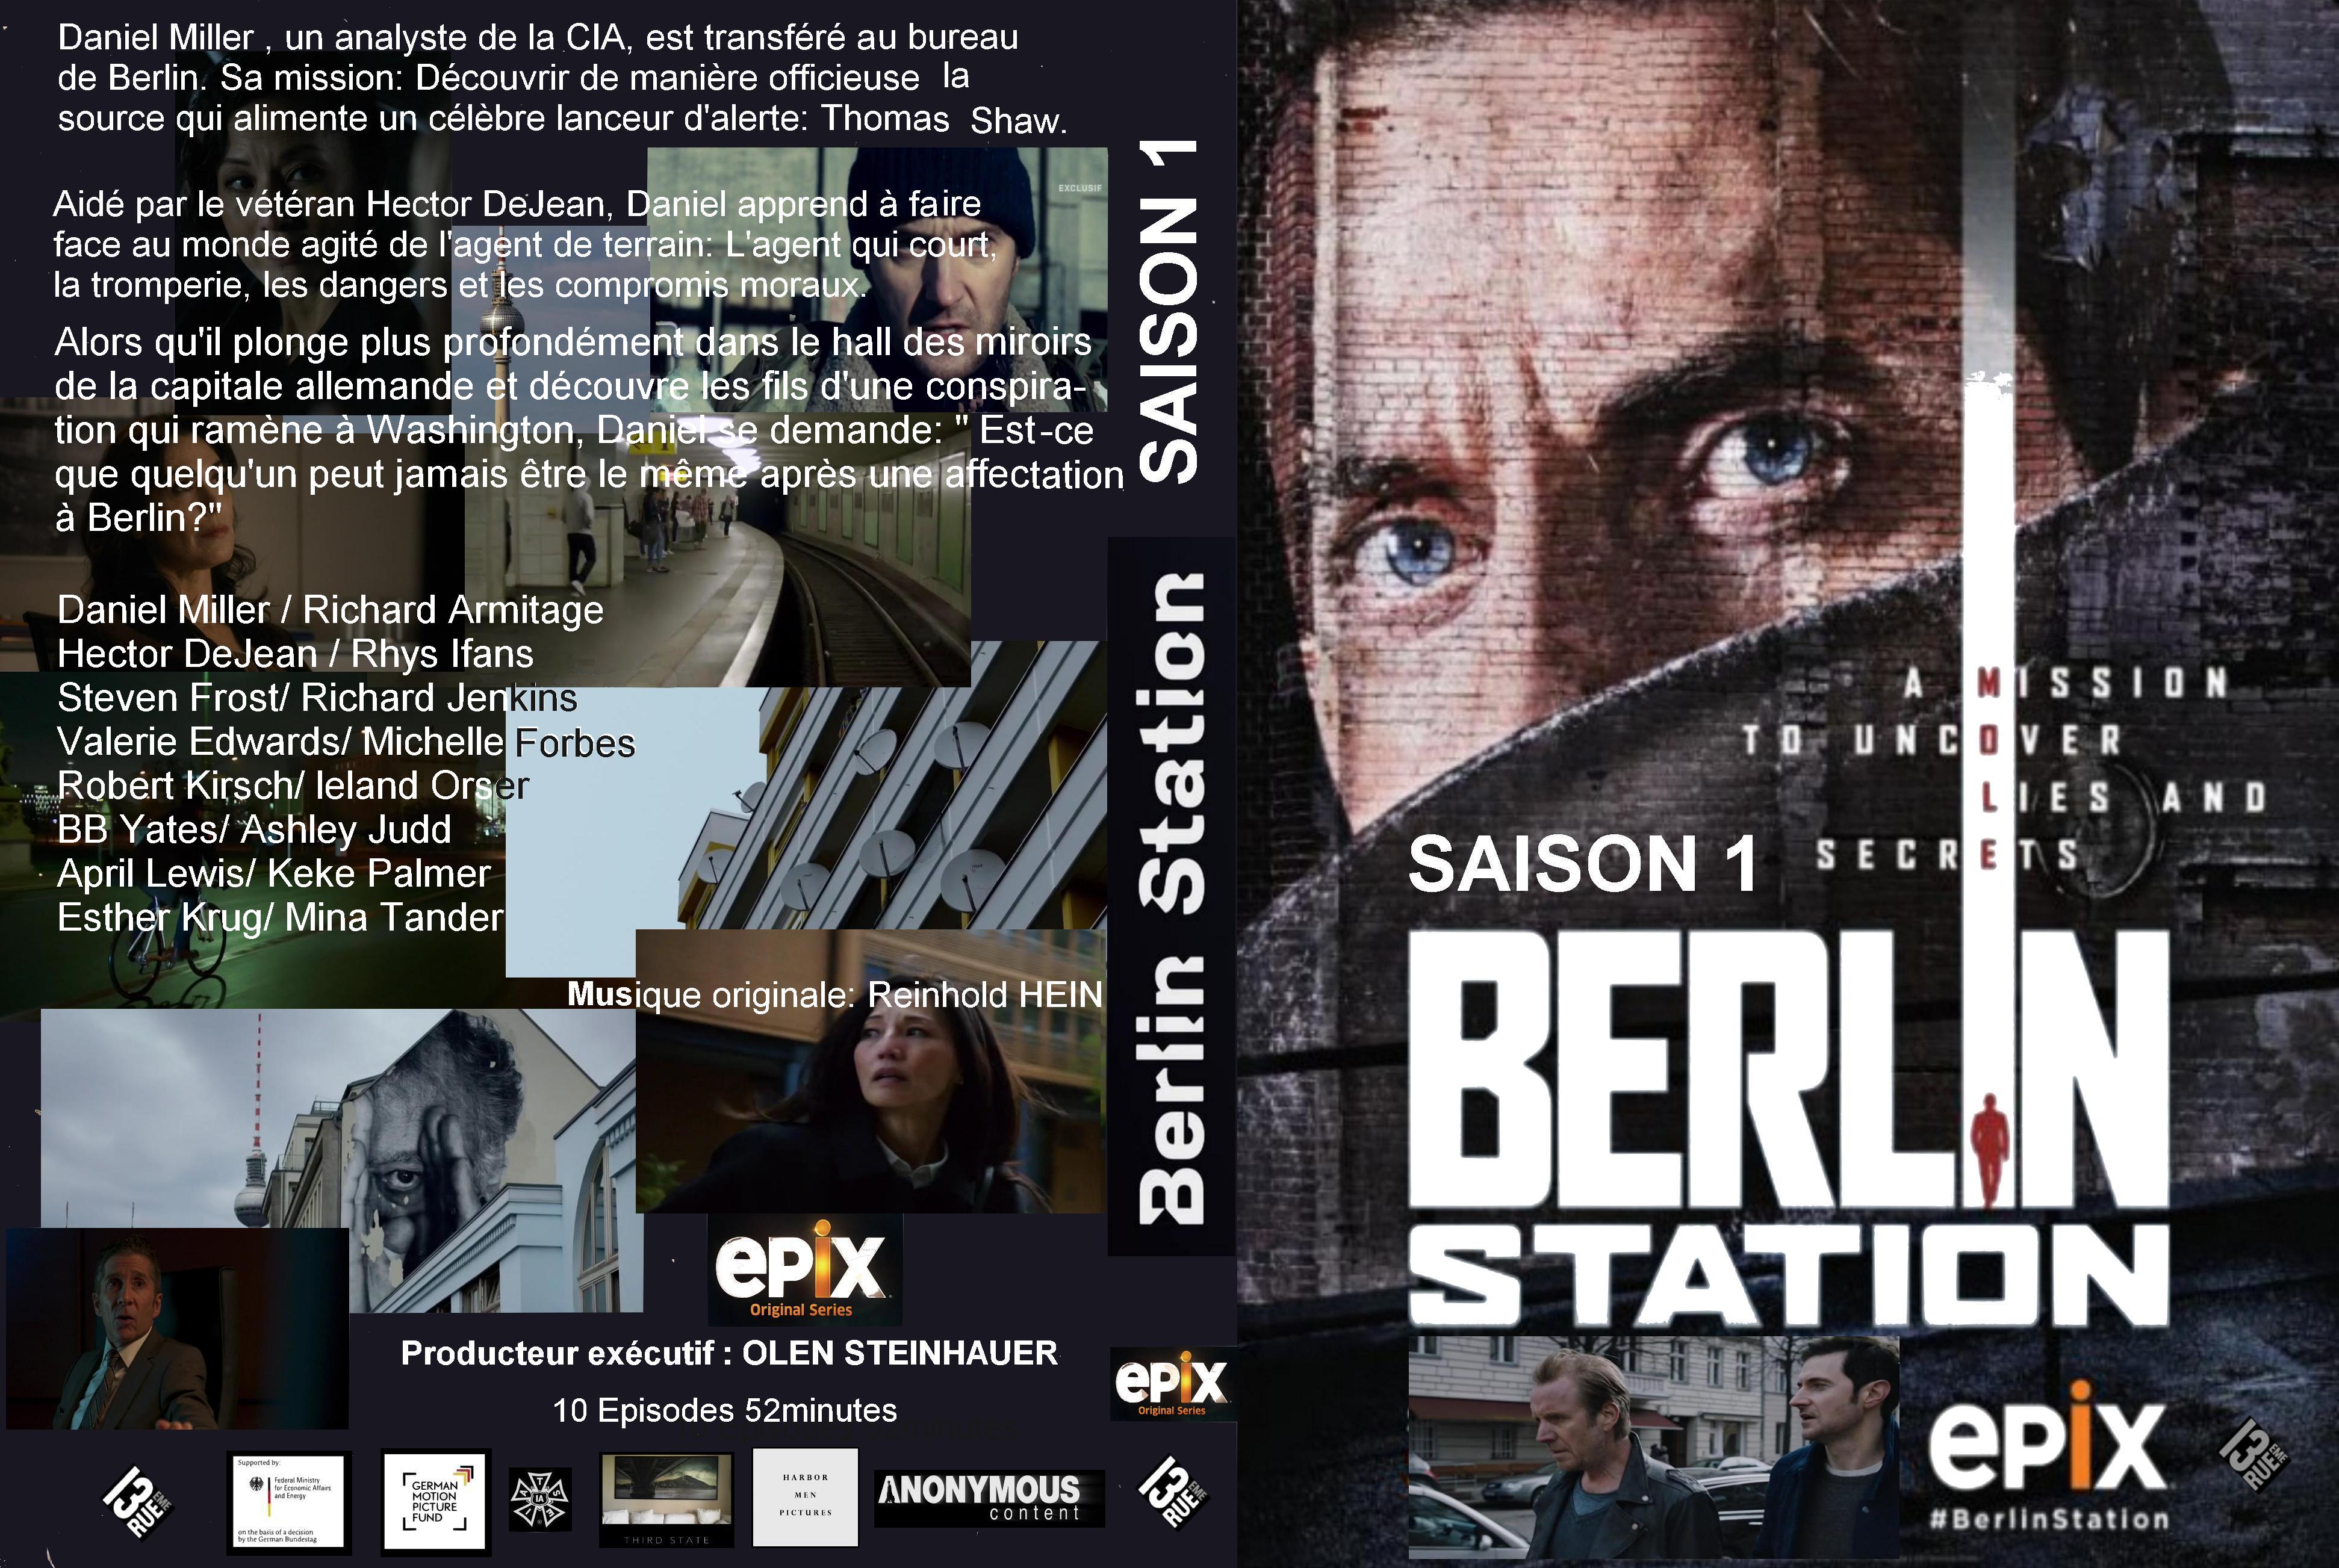 Jaquette DVD Berlin Station saison 1 custom